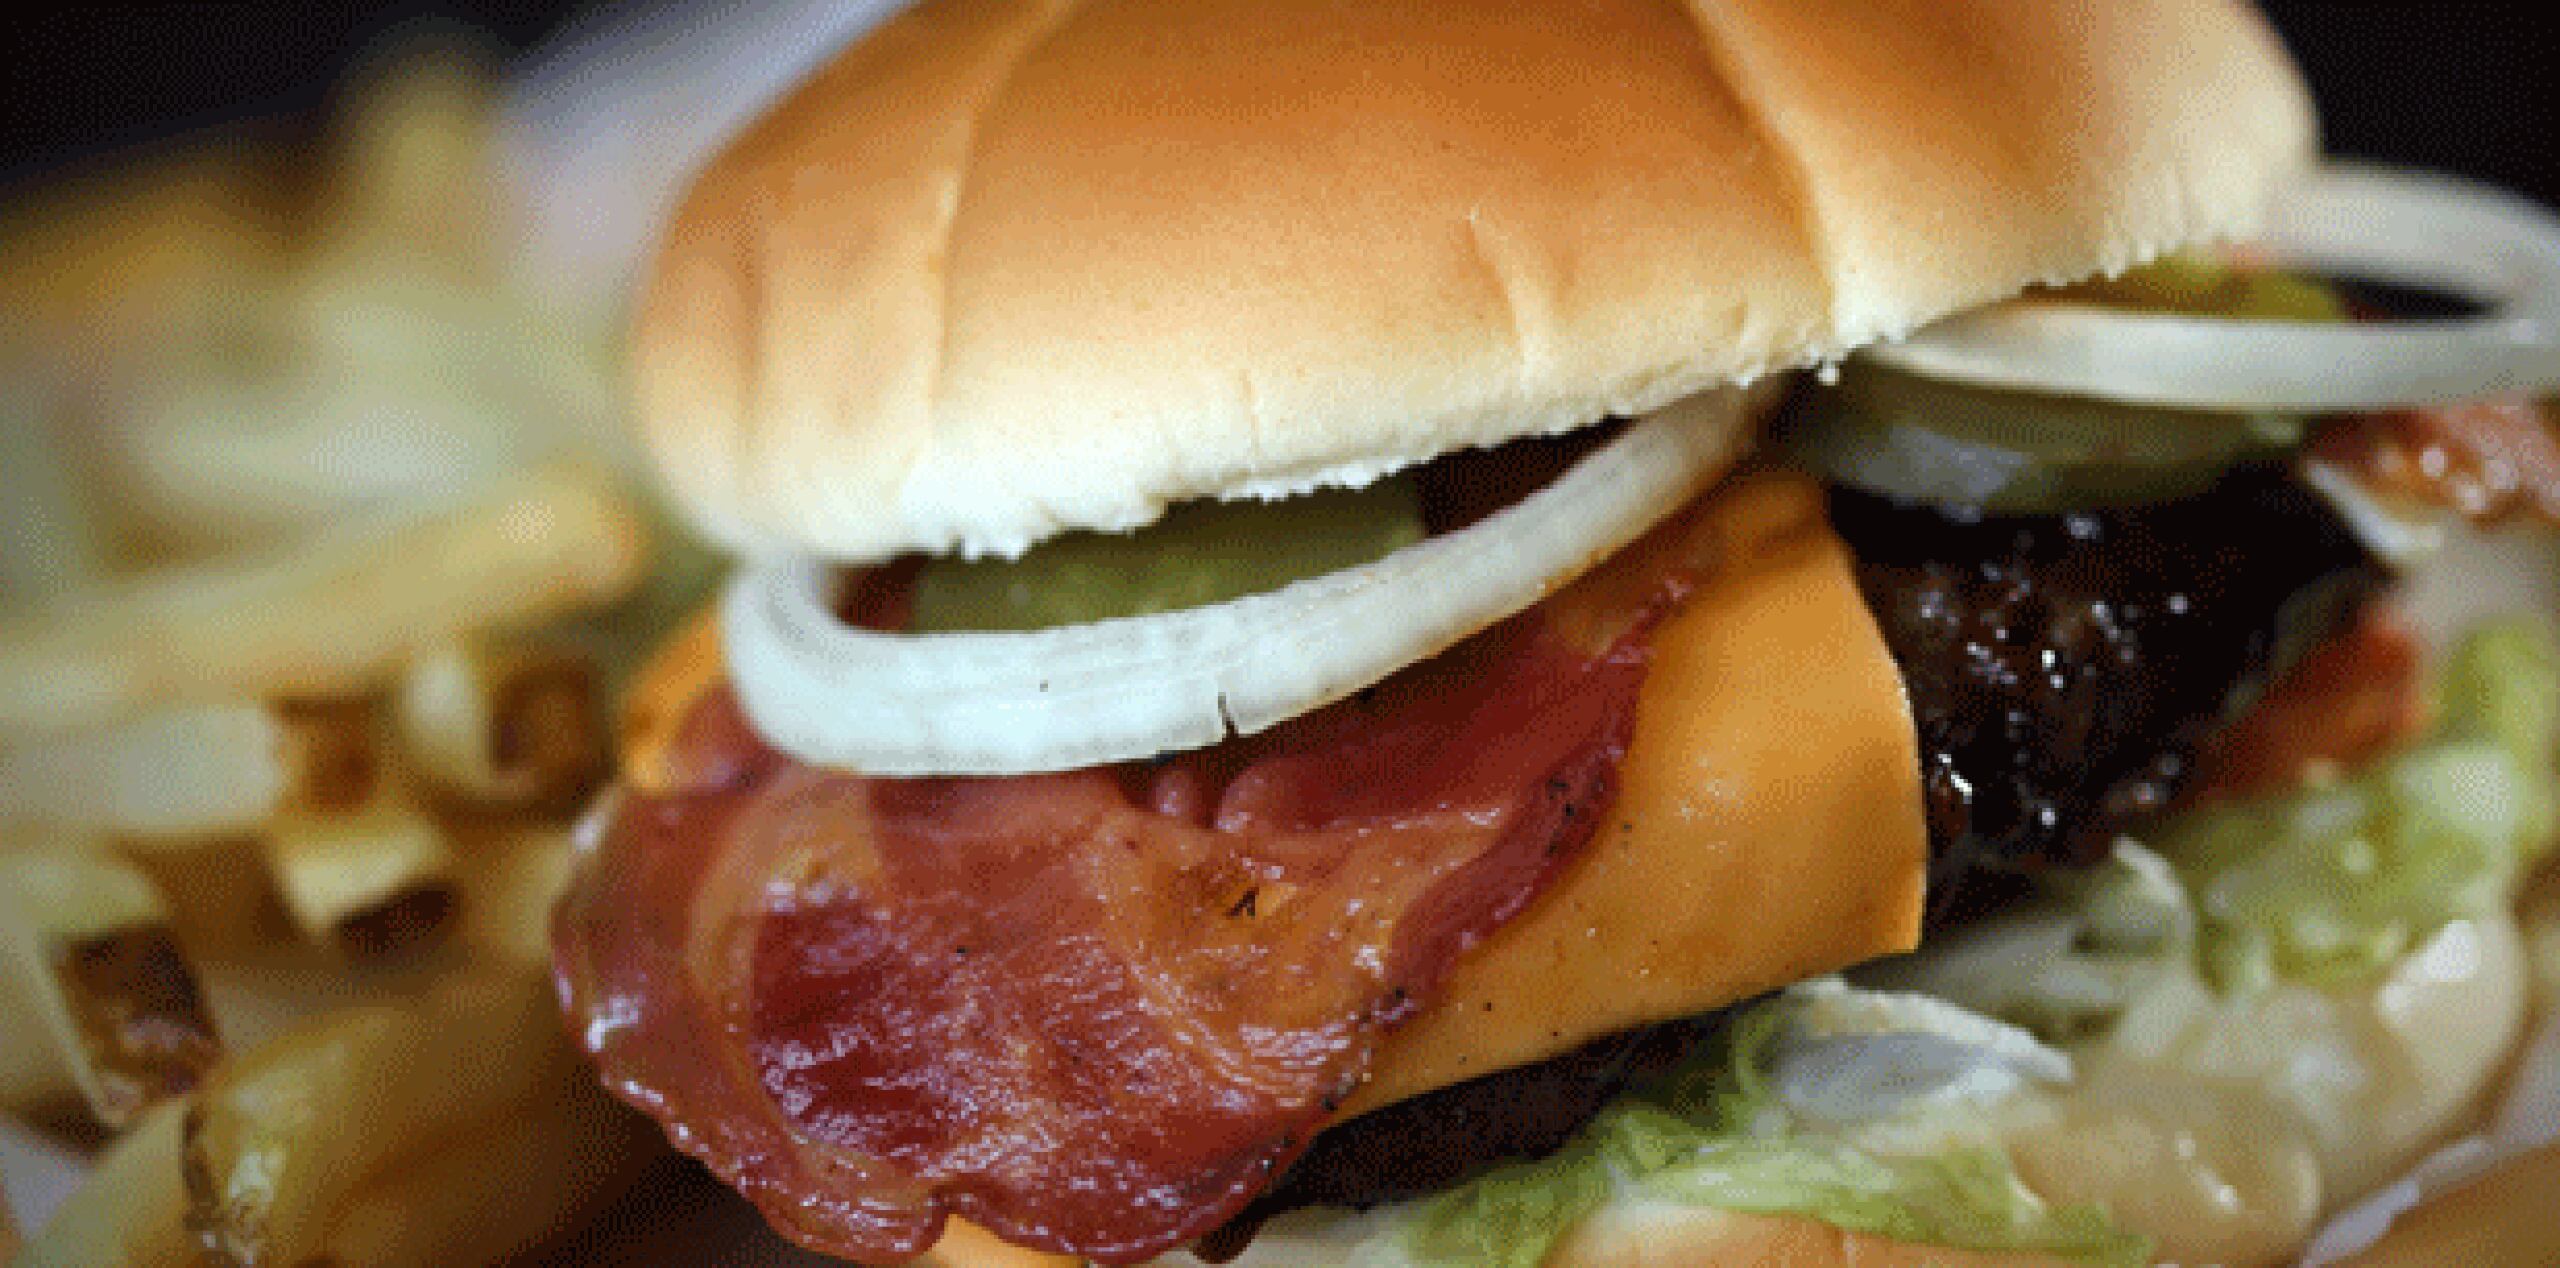 Bambú Burger Grill abrió sus puertas en Santa Rosa, Bayamón, en 1970, como un establecimiento híbrido entre la comida puertorriqueña y las hamburguesas tradicionales. (Archivo)